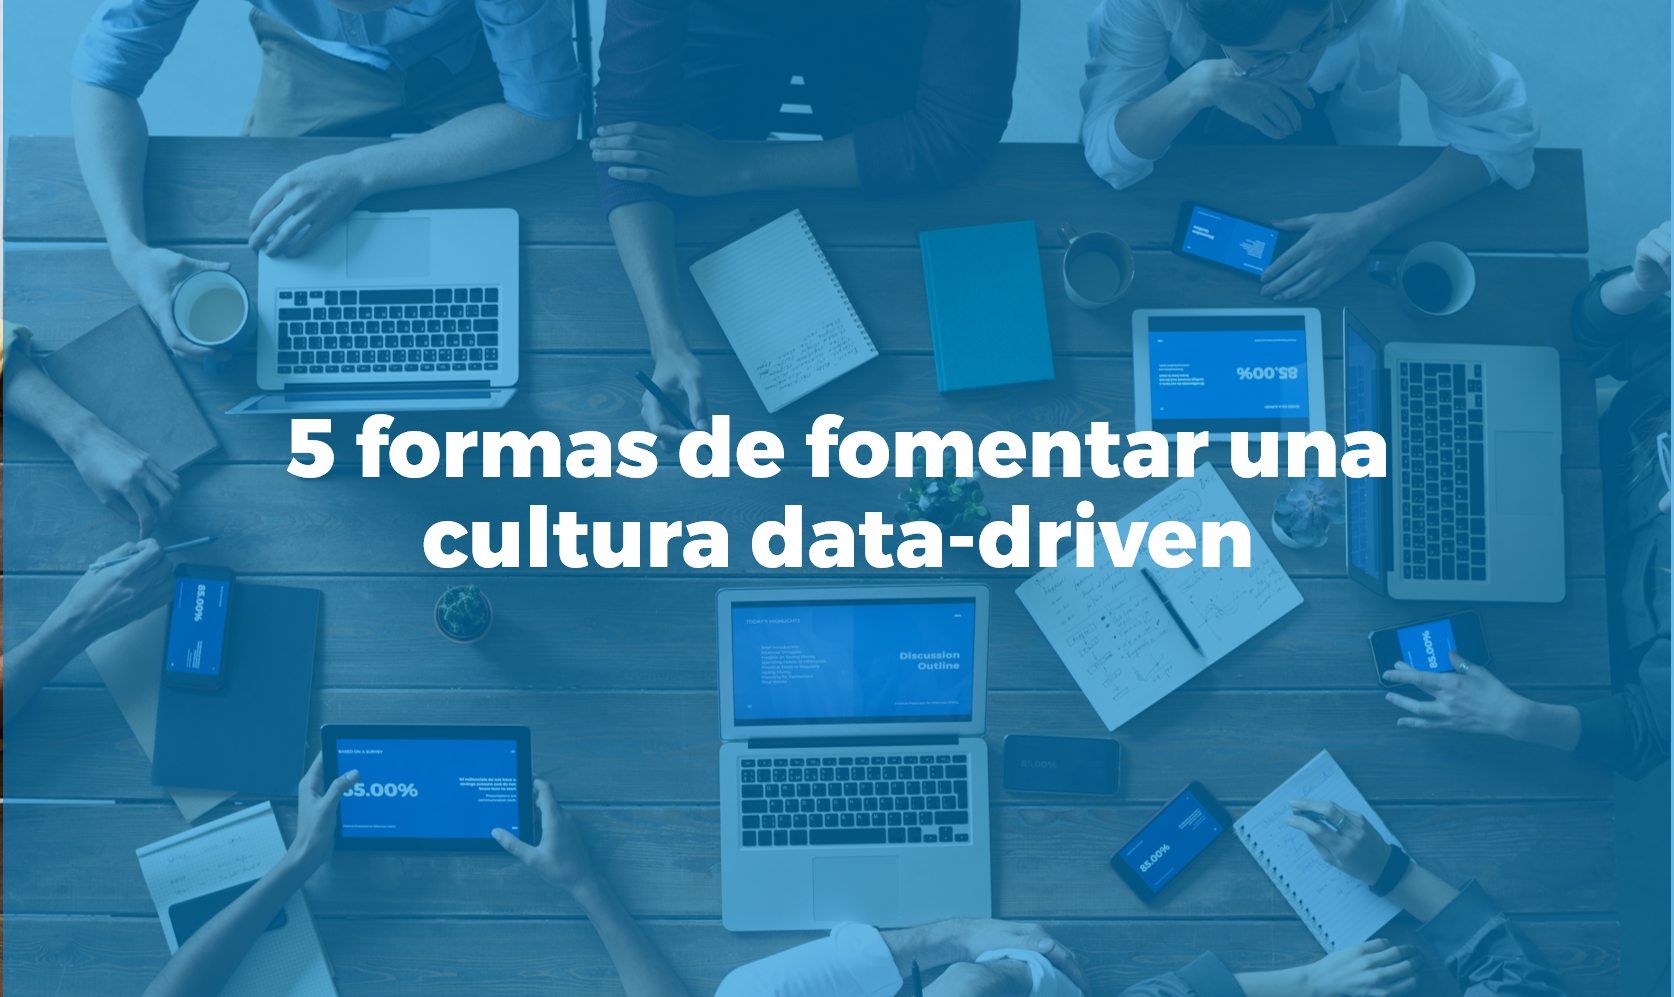 5 formas de fomentar una cultura data-driven en la empresa